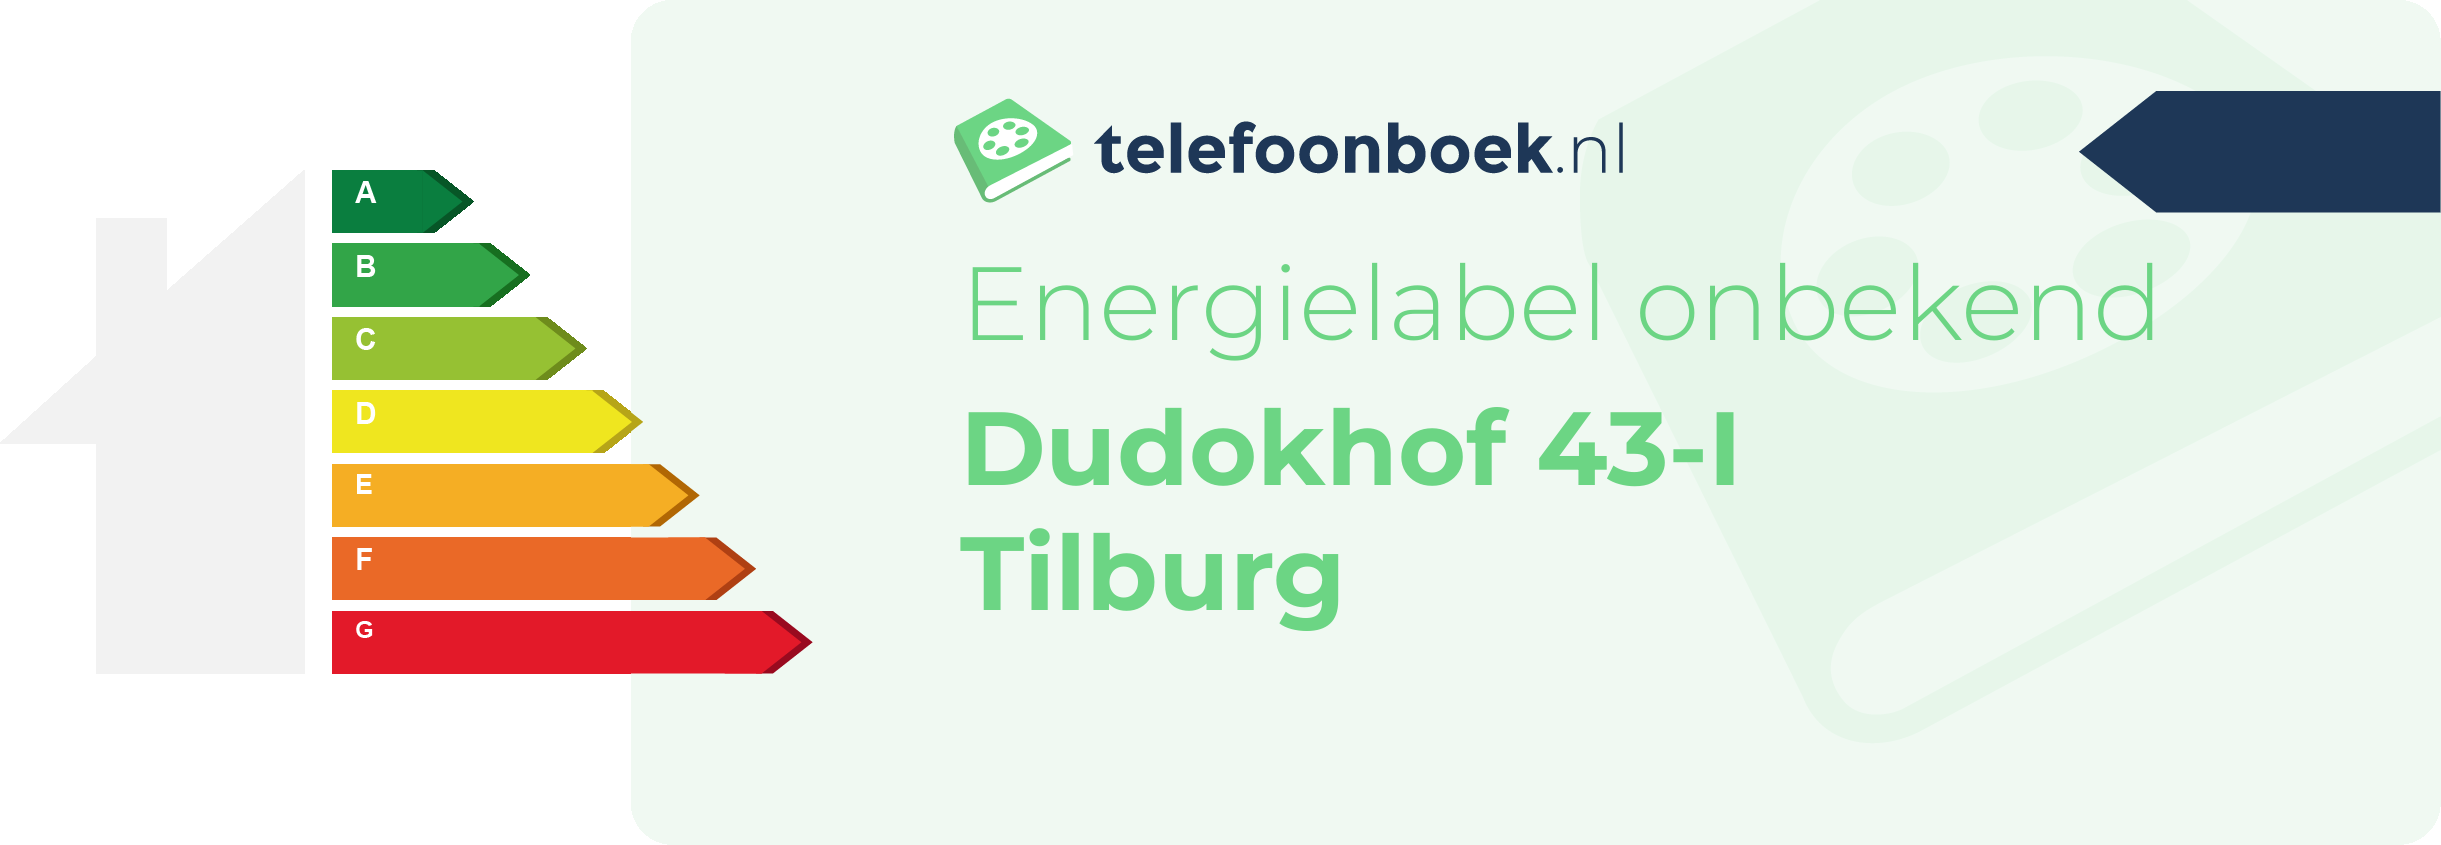 Energielabel Dudokhof 43-I Tilburg